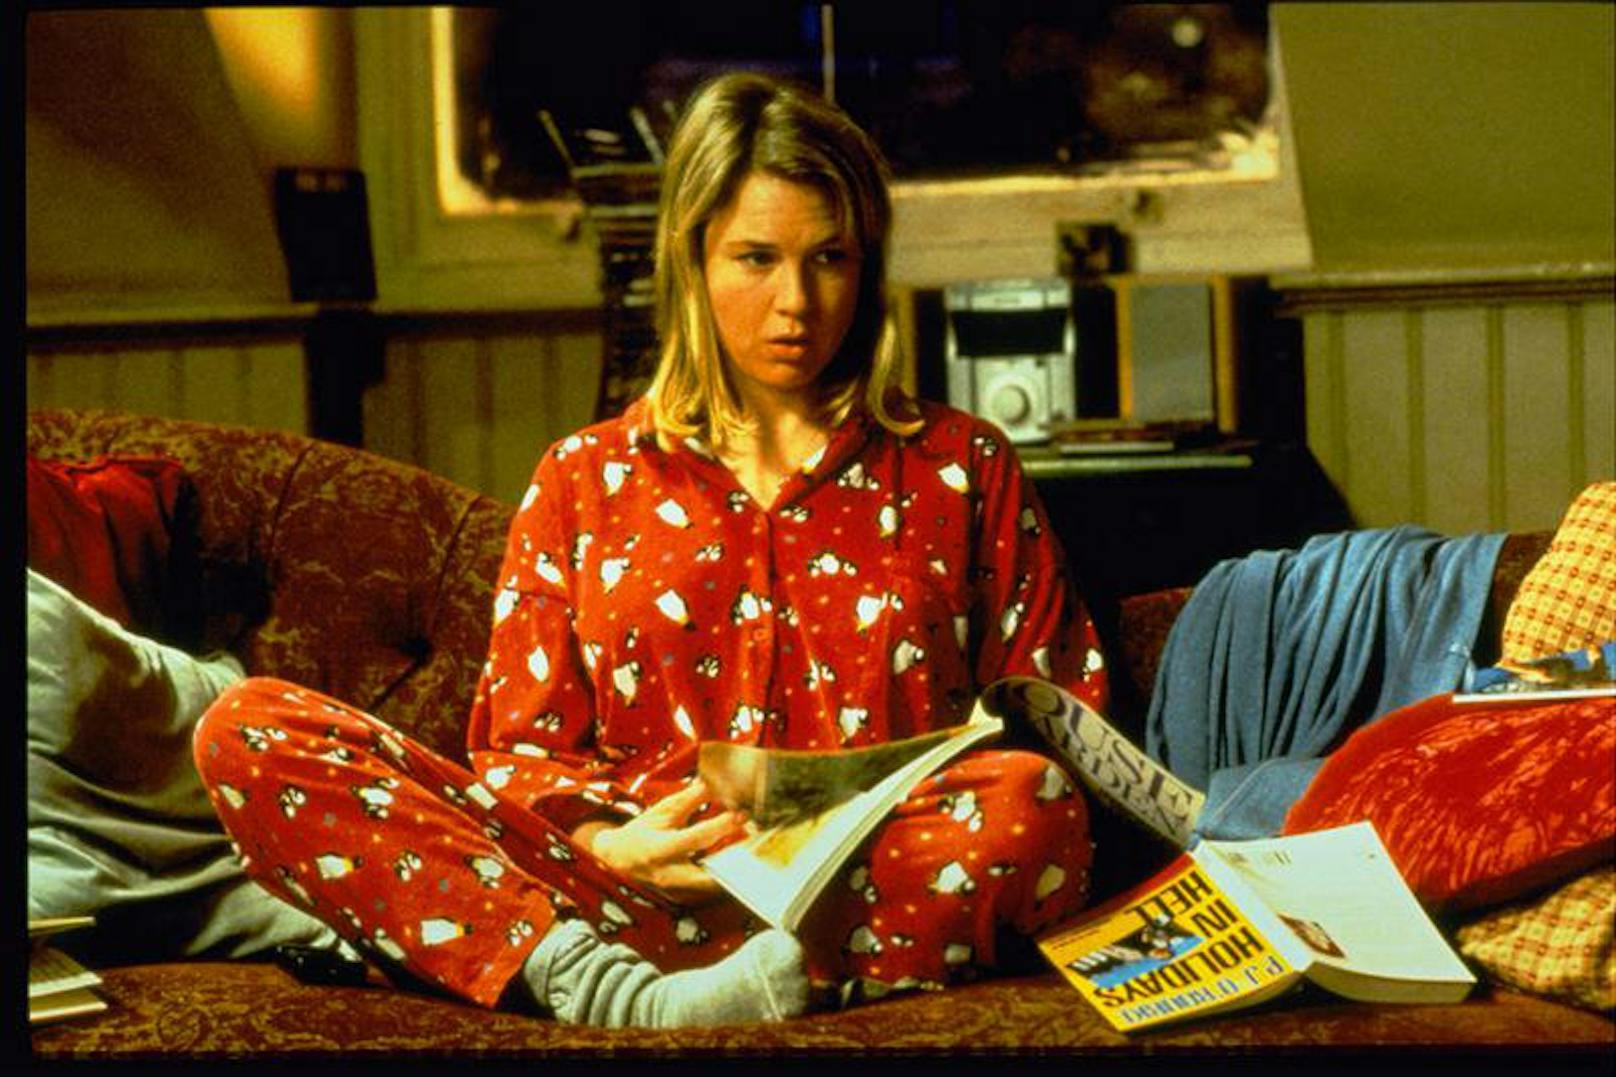 20.15 Uhr, ORF Eins: "Bridget Jones - Schokolade zum Frühstück" (2001). Die Komödie erzählt von der unzufriedenen Single-Lady, die auf der Suche nach der großen Liebe ist. Mit Renée Zellweger, Hugh Grant und Colin Firth. Direkt danach (21.45 Uhr): "Bridget Jones 2 - Am Rande des Wahnsinns".